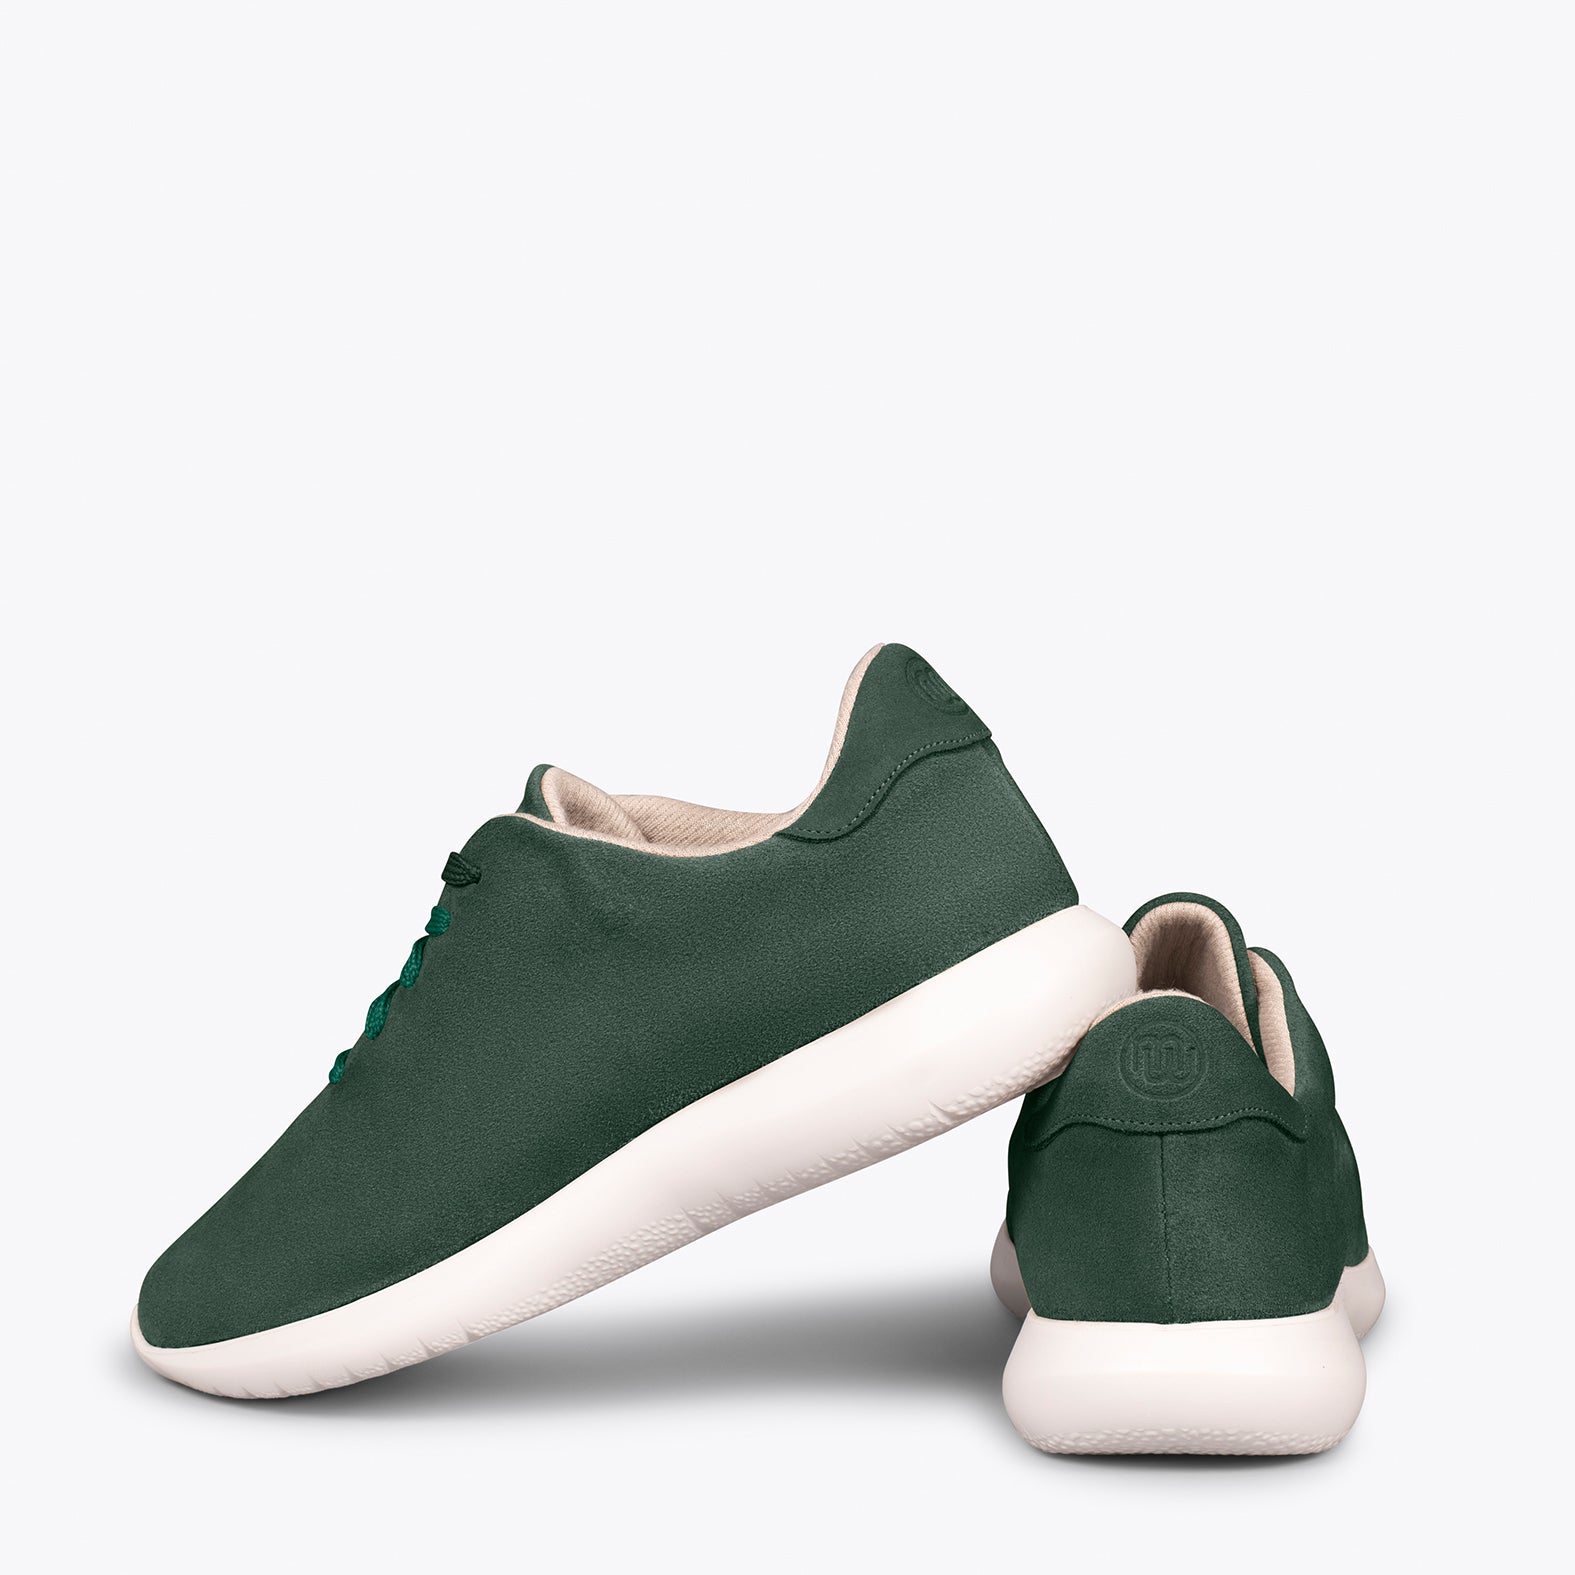 WALK – DARK GREEN comfortable women’s sneakers